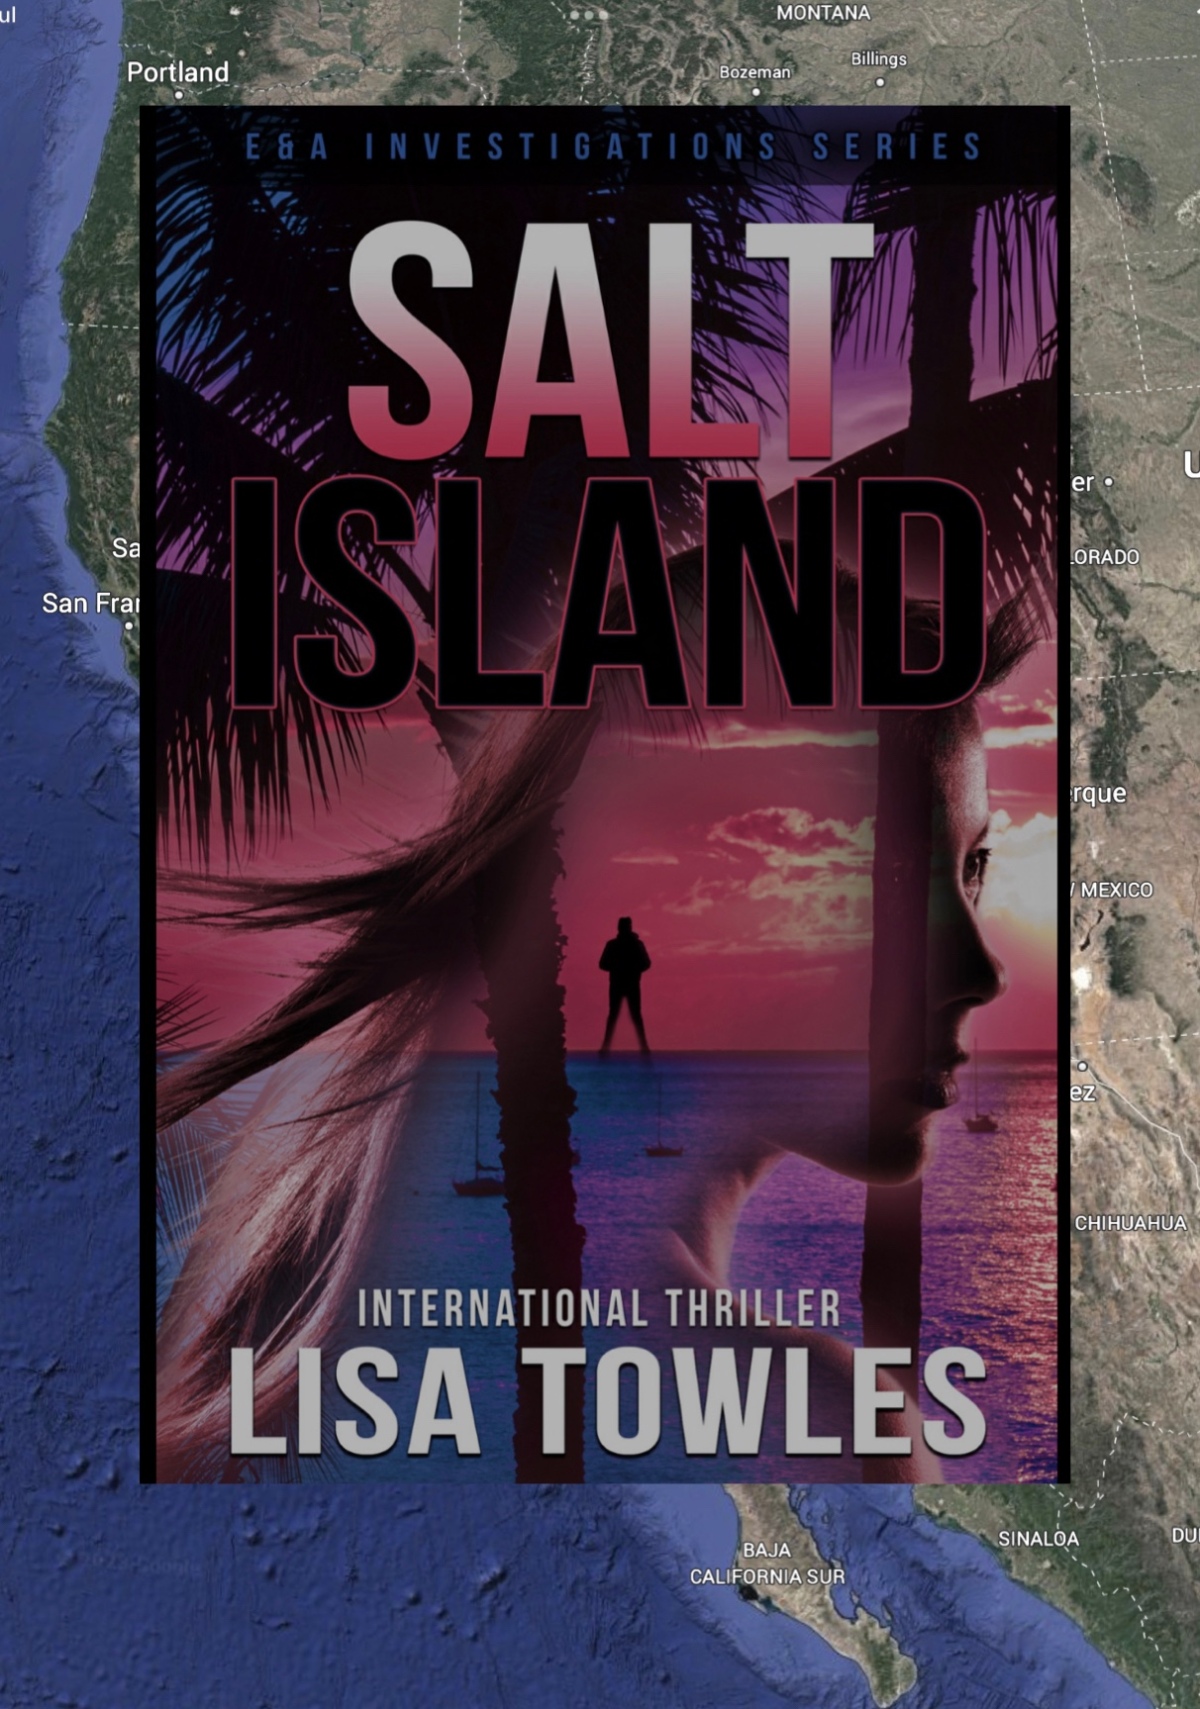 Salt Island. Lisa Towles